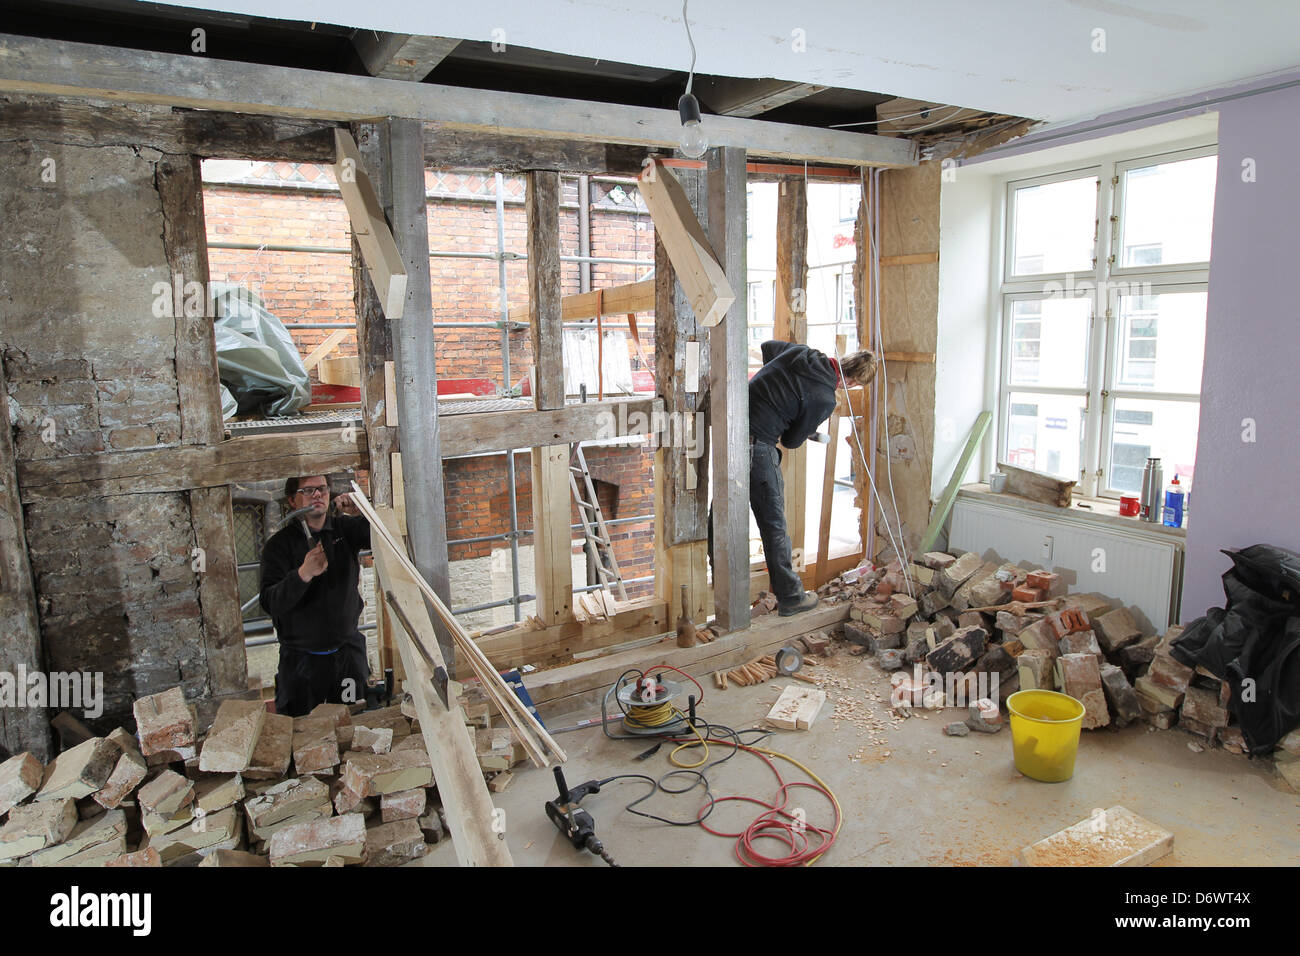 Flensburg, Allemagne, éponge la rénovation d'une vieille maison à pans de bois de la ville de Flensburg Banque D'Images